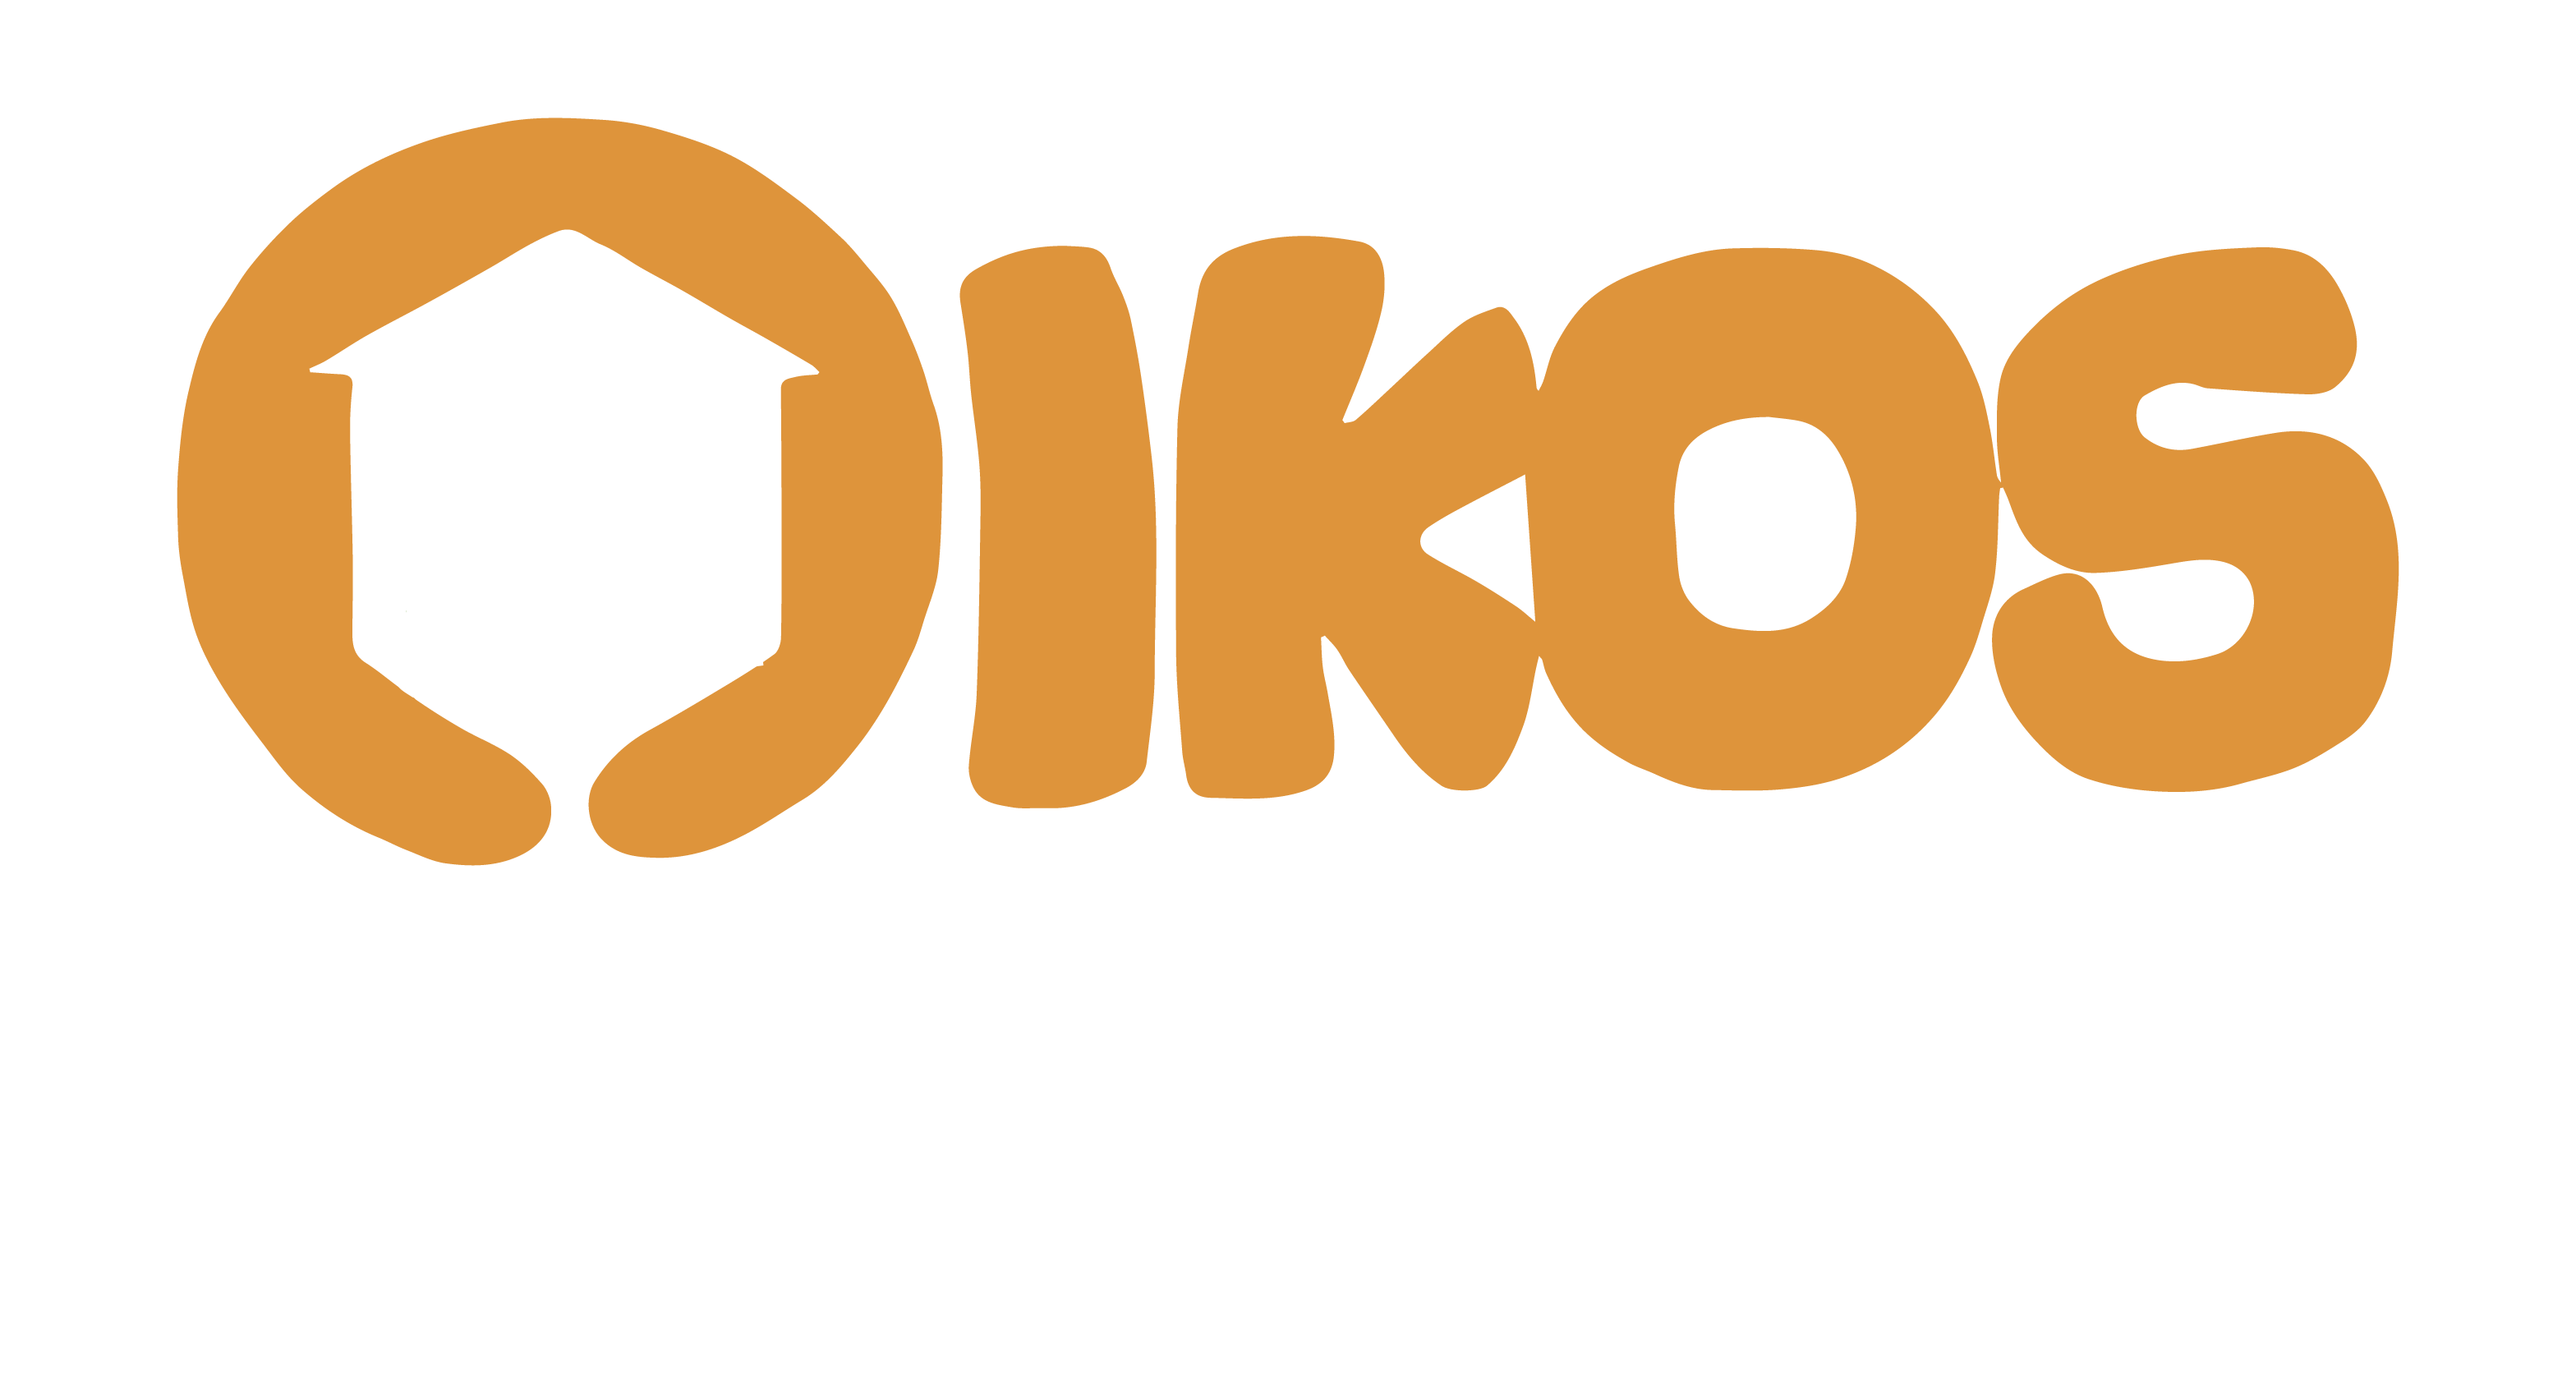 Oikos Household of Faith